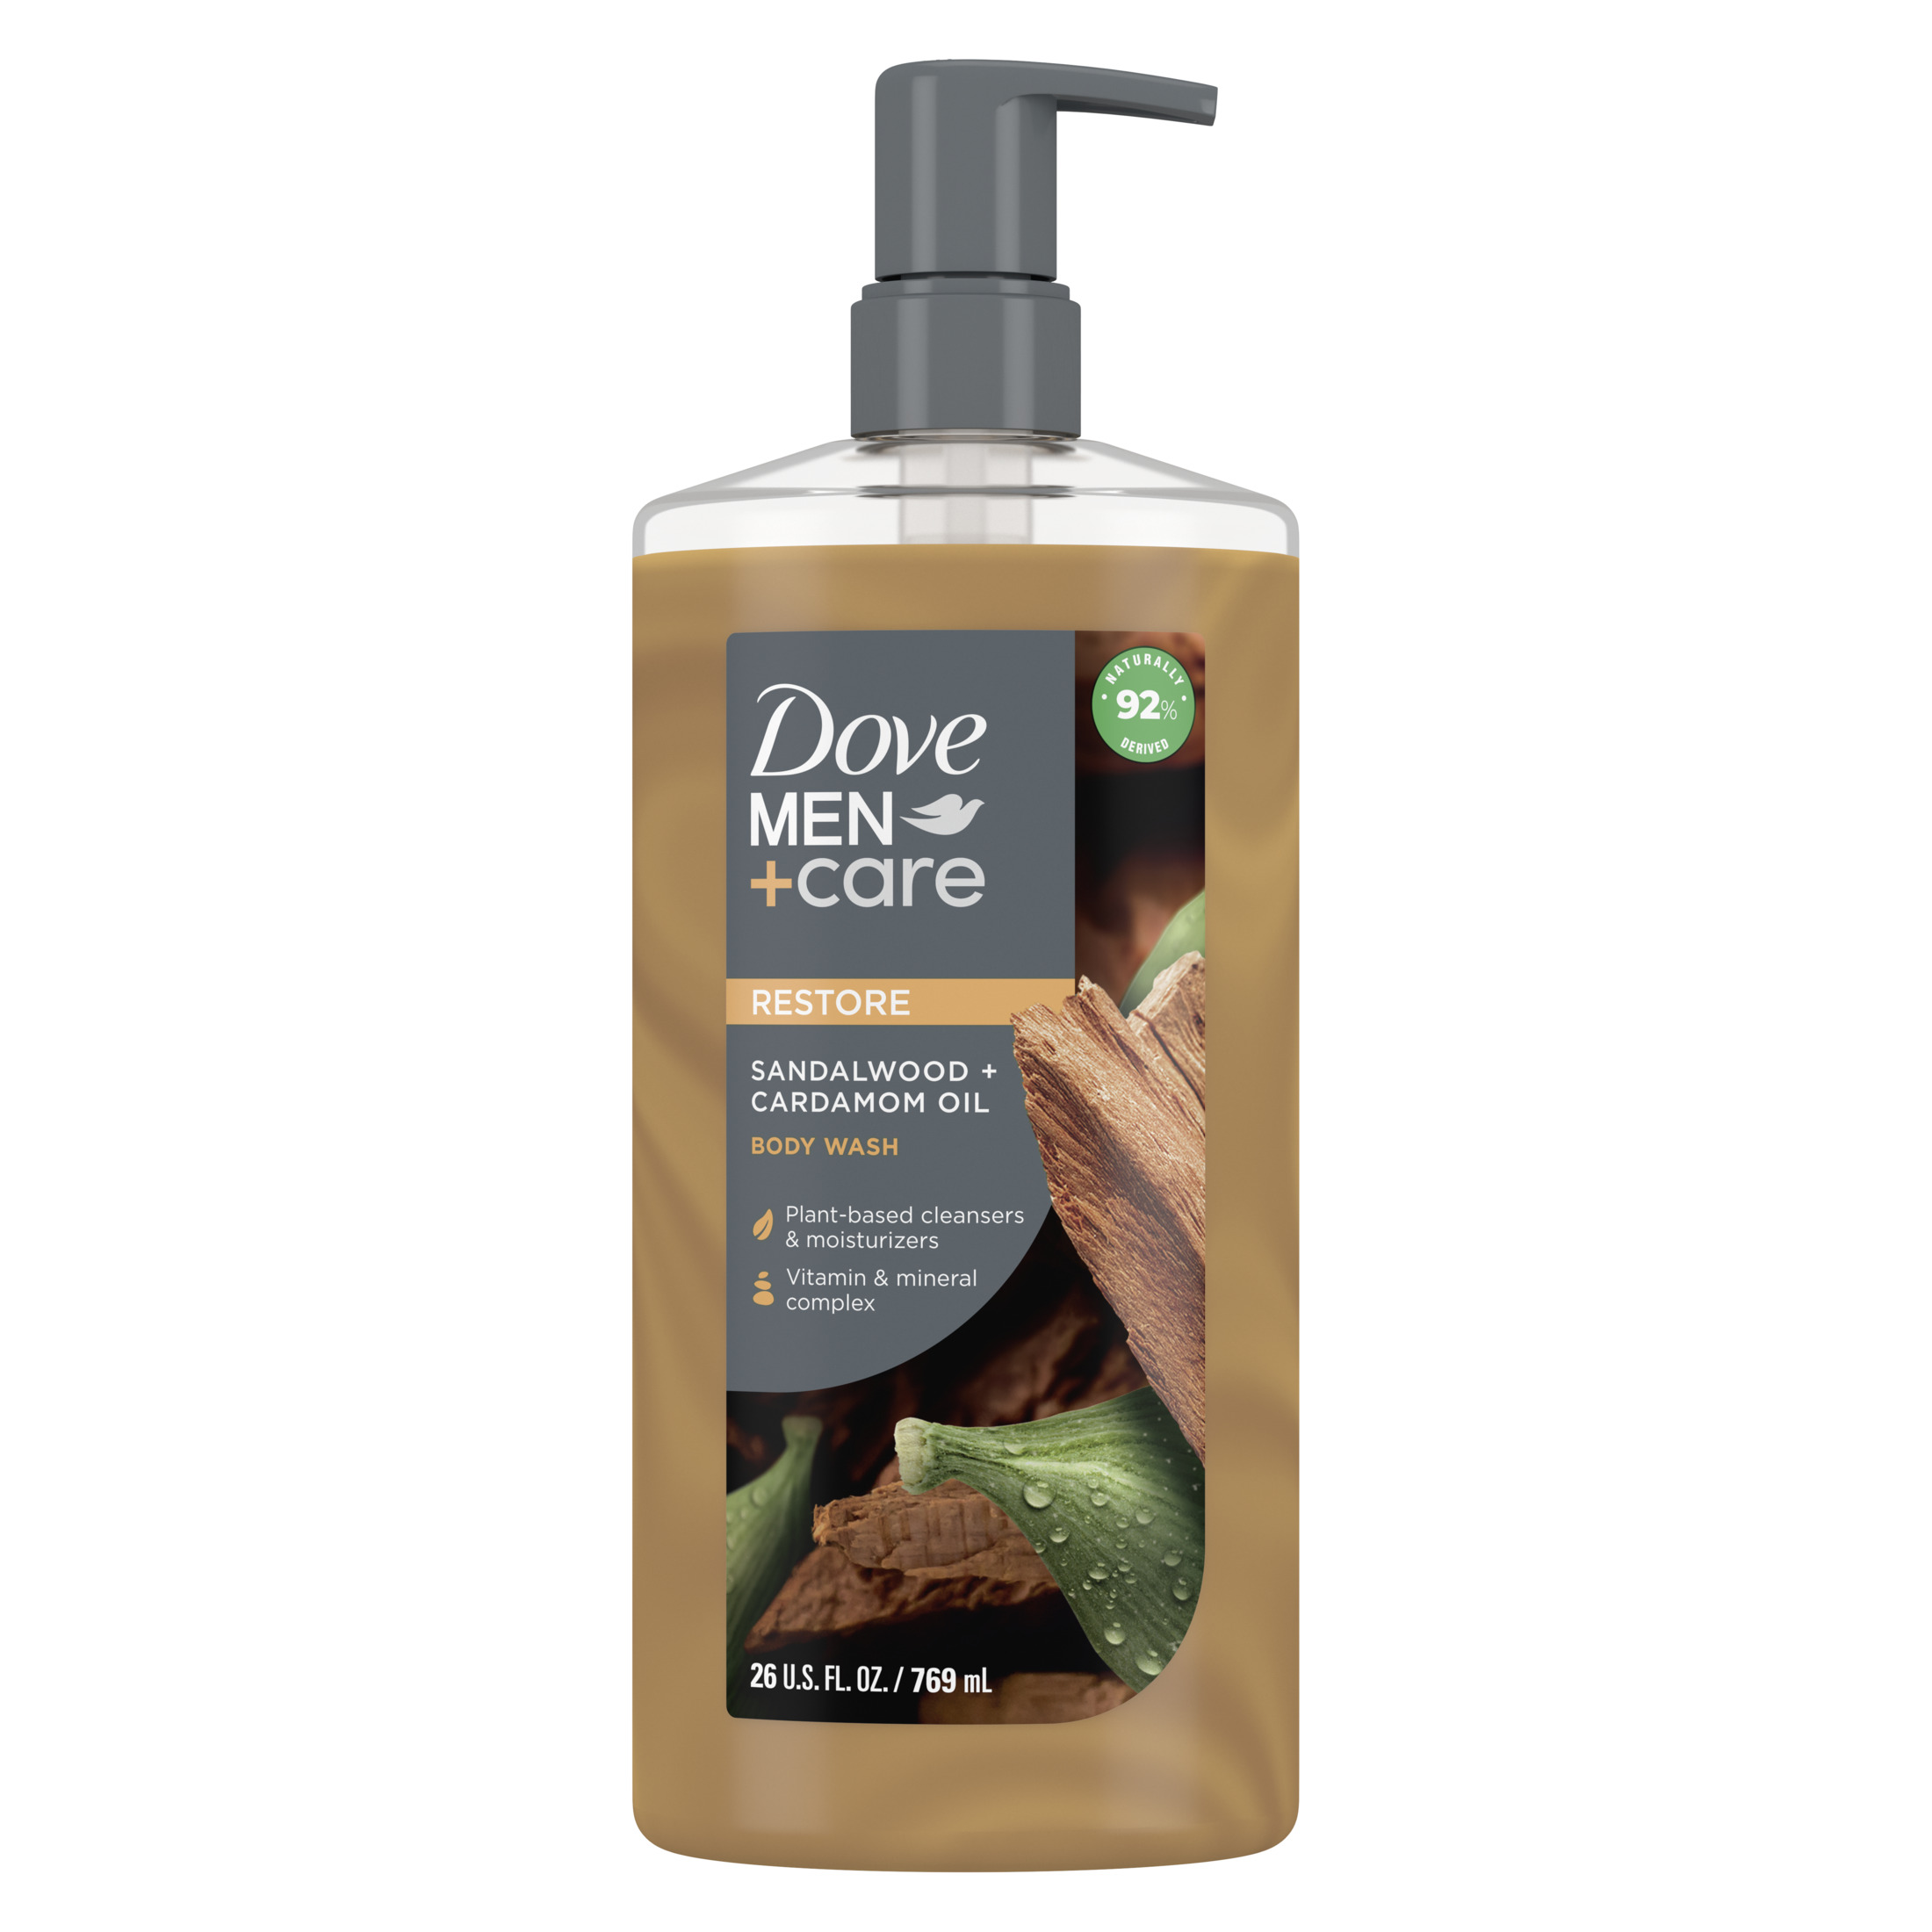 Dove Men+Care Plant-Based Body Wash Sandalwood + Cardamom Oil, 26 oz - image 1 of 7